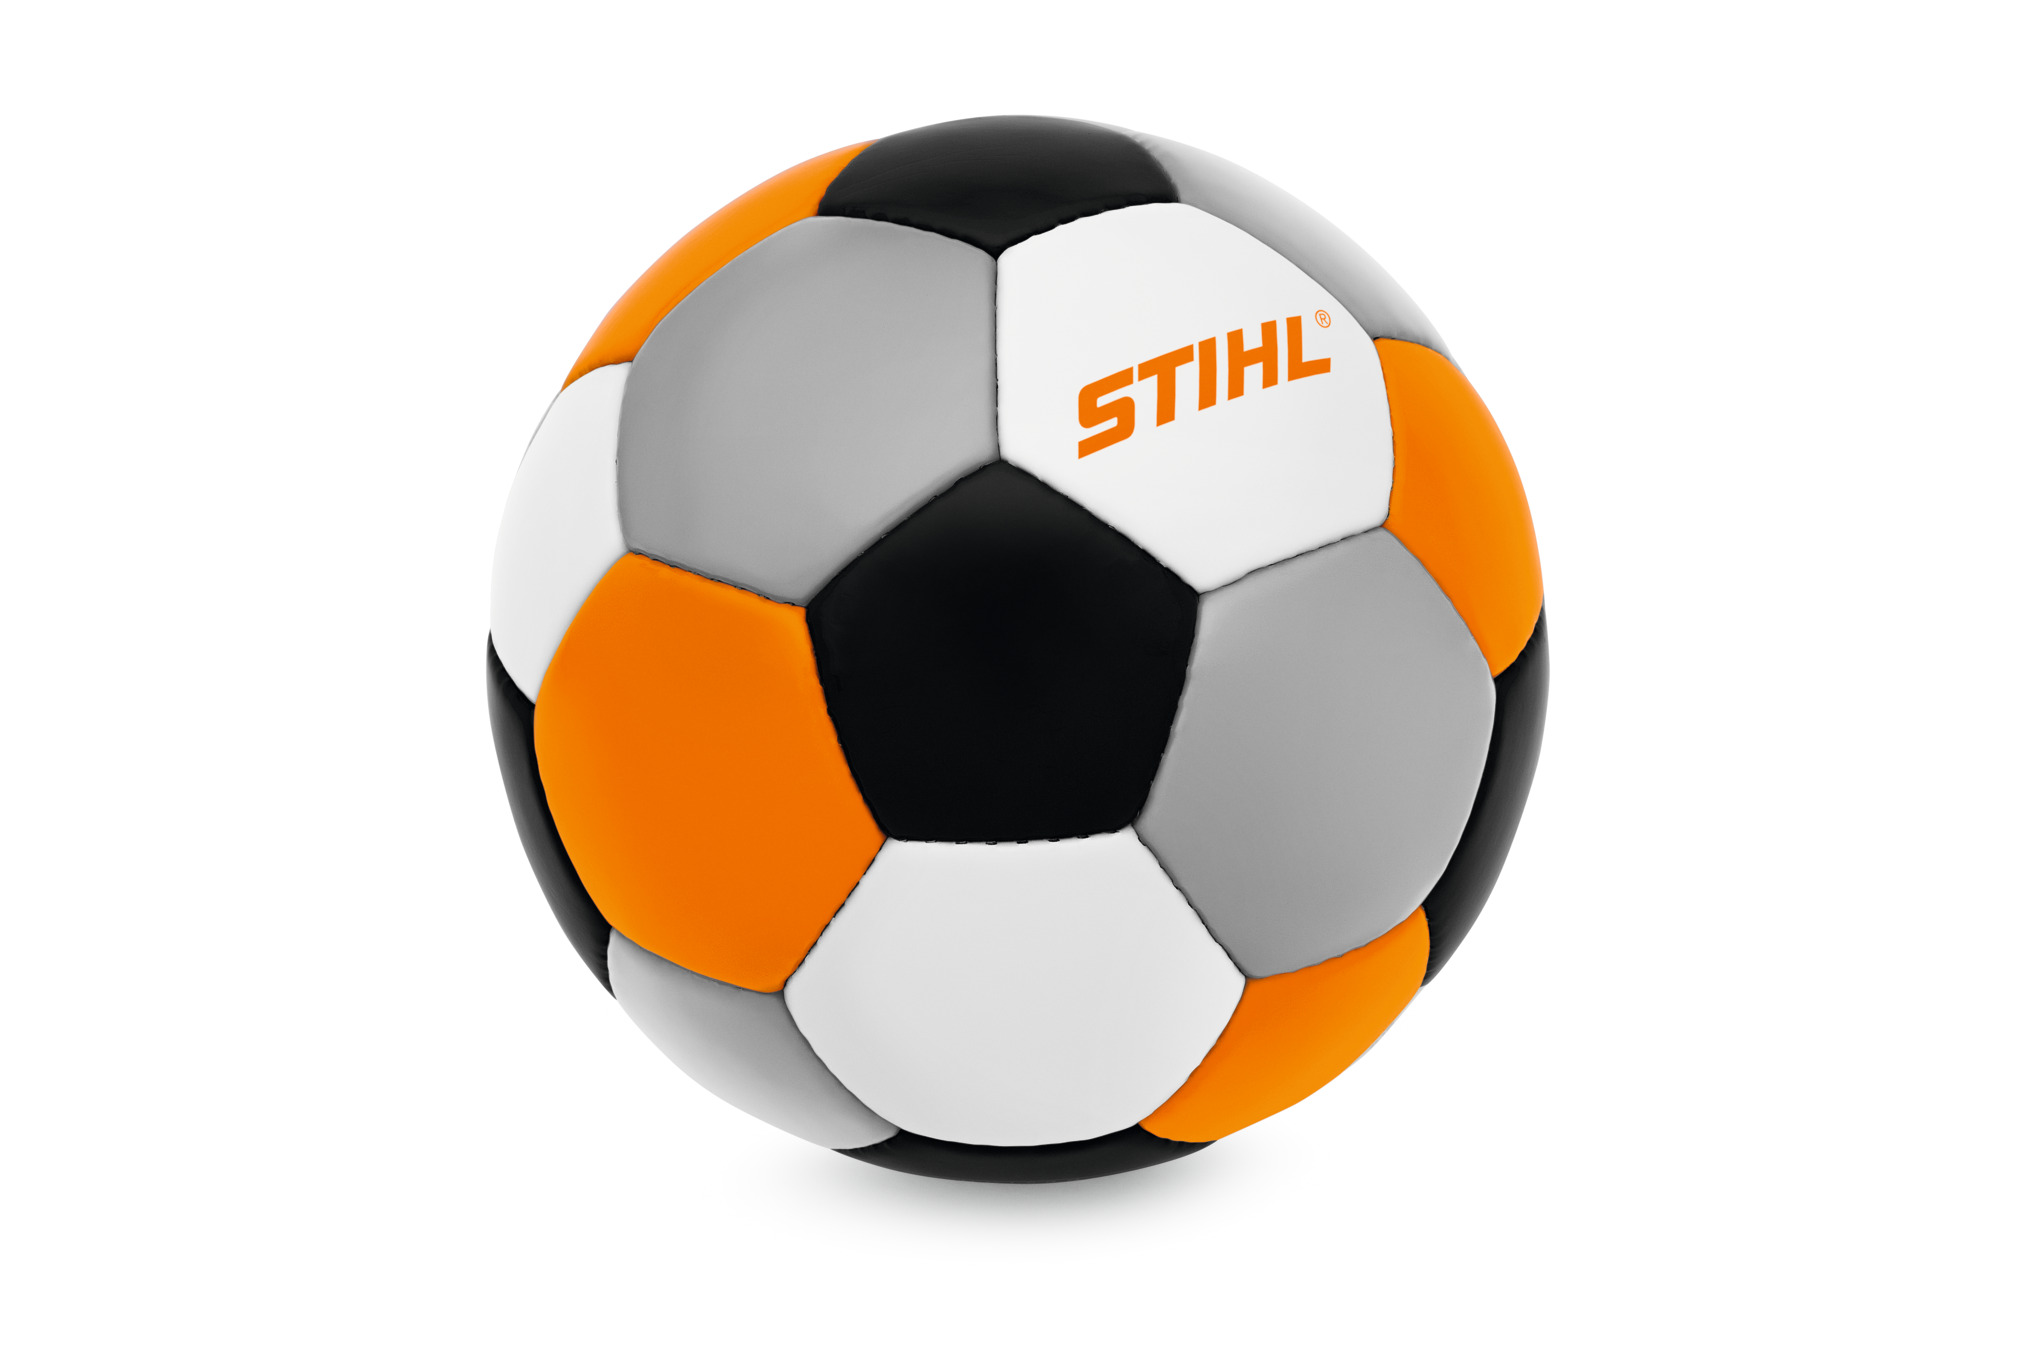 Ballon de football STIHL